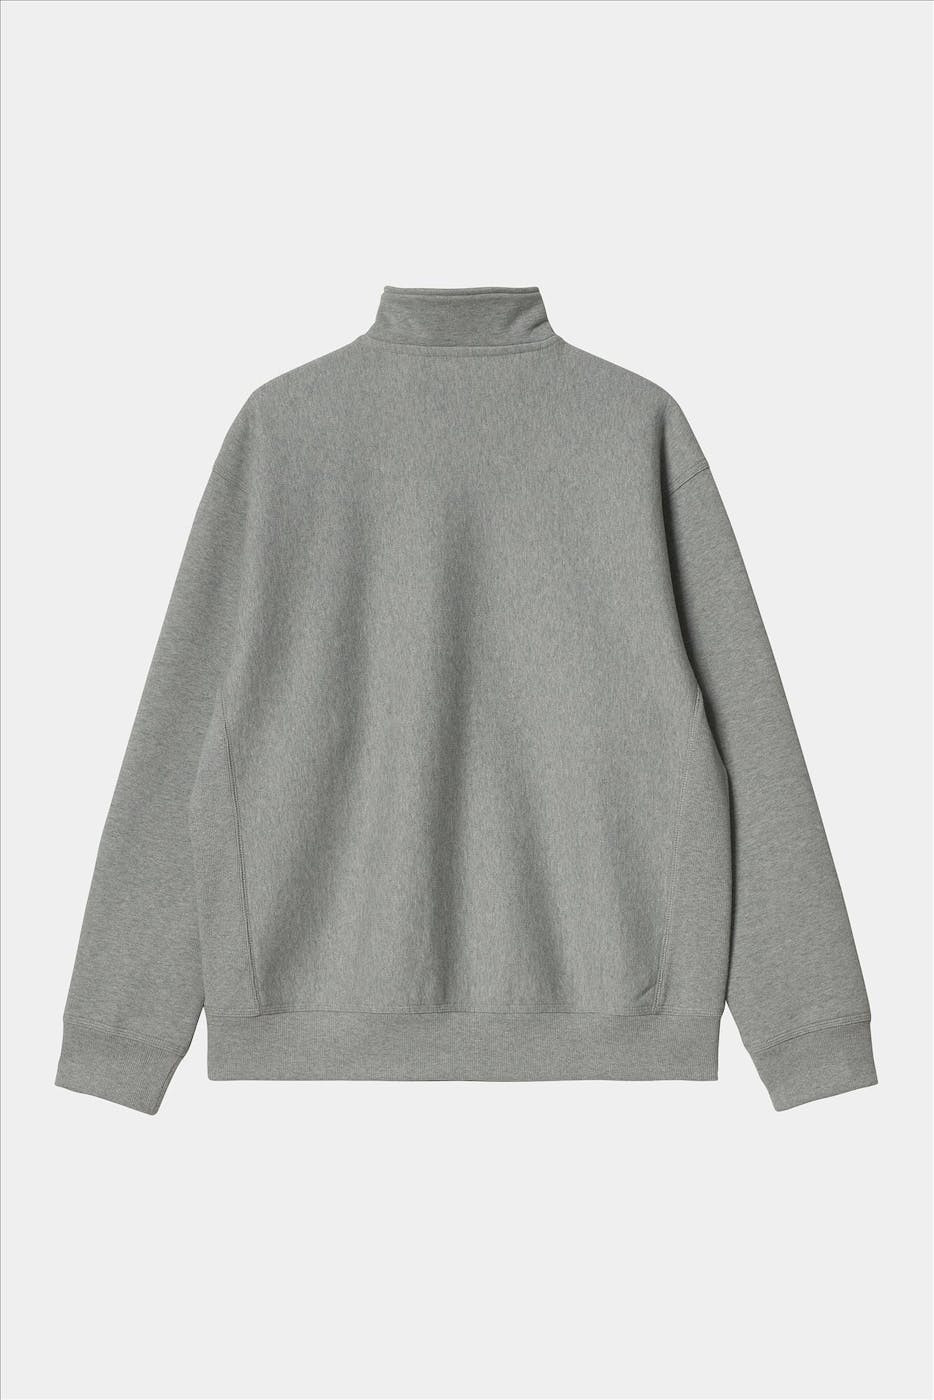 Carhartt WIP - Grijze Half Zip American Script sweater